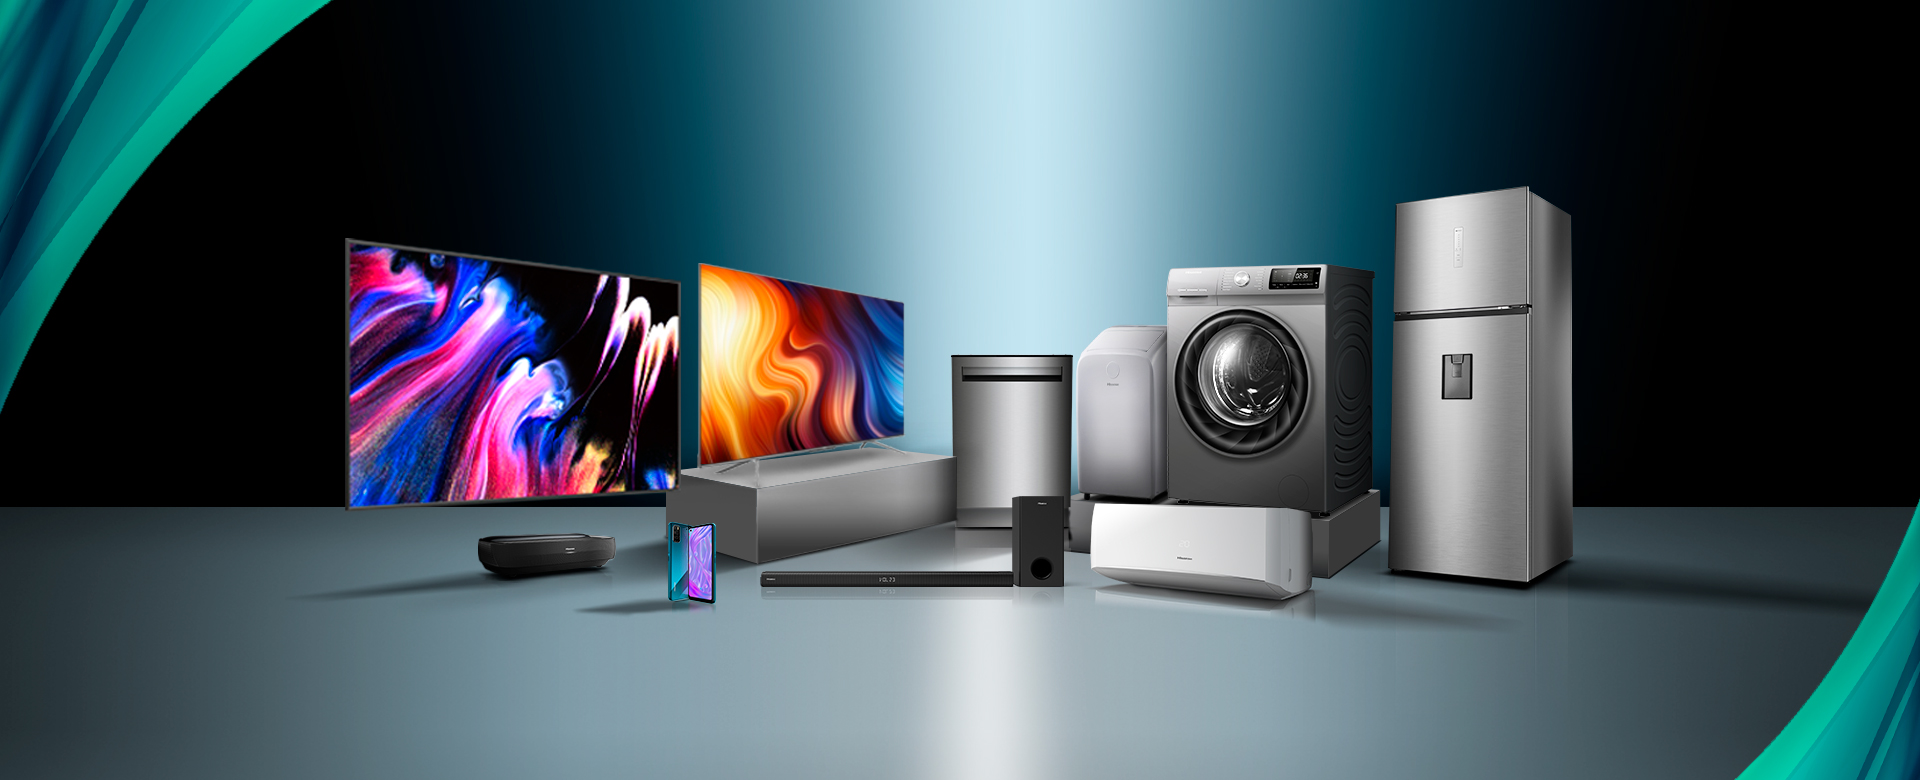 Hisense presenta su nueva gama de productos en #CES2023, con ULED Mini LED, Laser TVs, Laser Cinemas, cocinas mejoradas y una línea de productos B2B